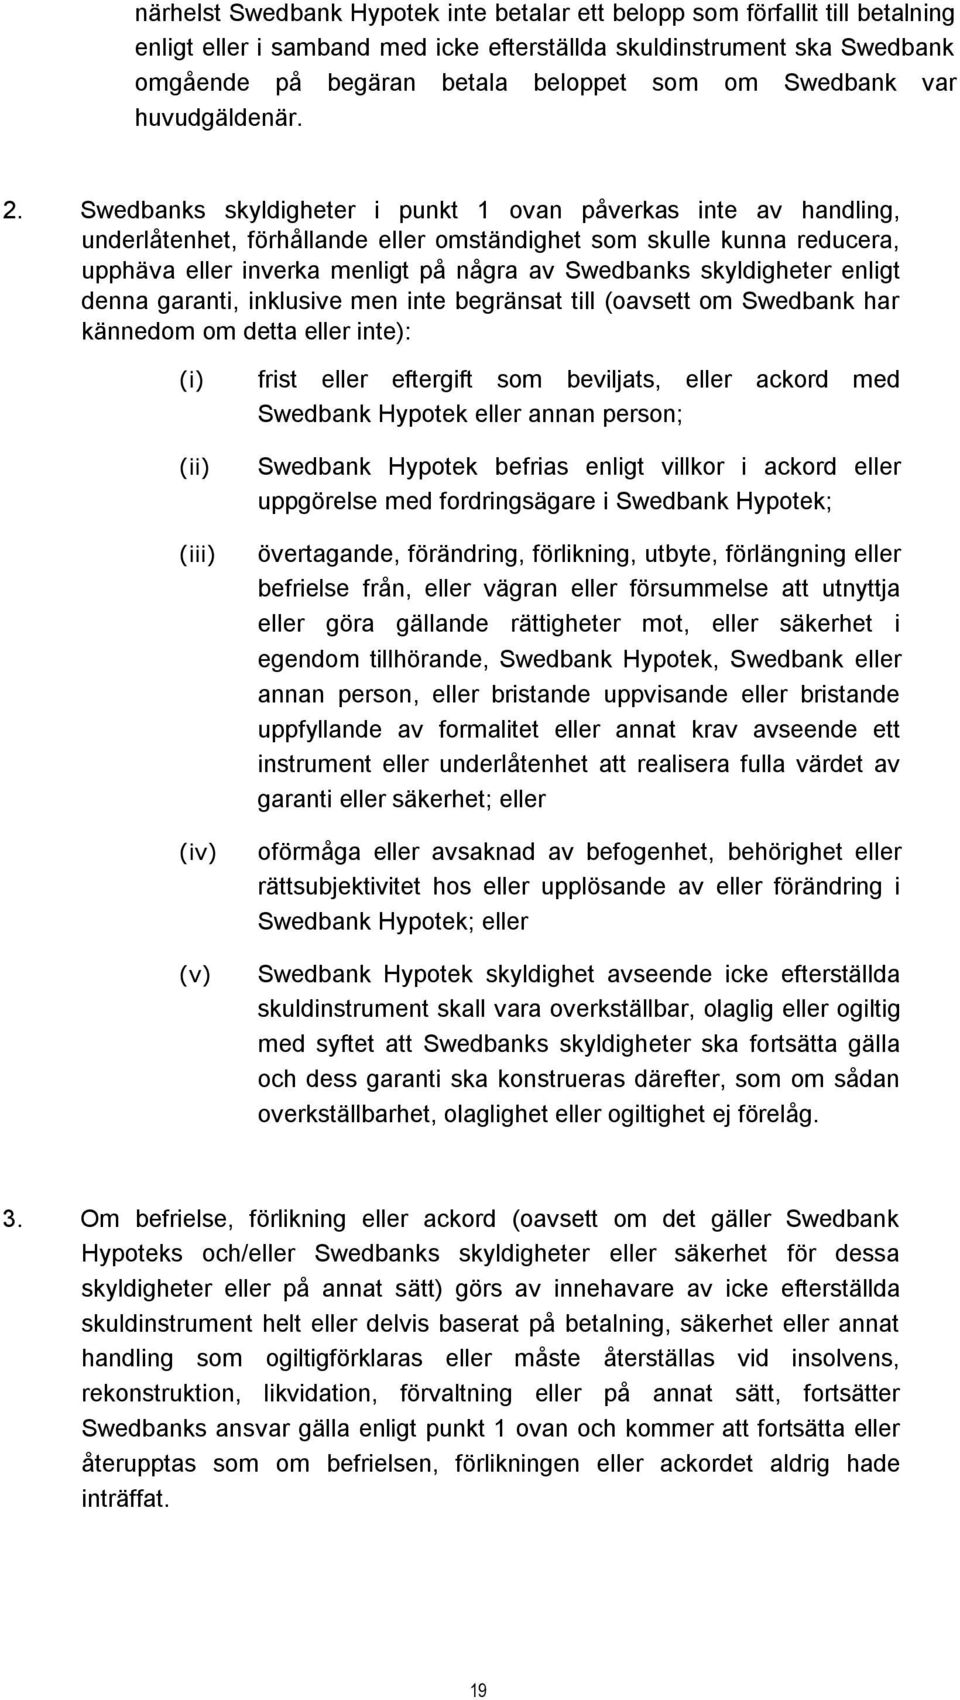 Swedbanks skyldigheter i punkt 1 ovan påverkas inte av handling, underlåtenhet, förhållande eller omständighet som skulle kunna reducera, upphäva eller inverka menligt på några av Swedbanks